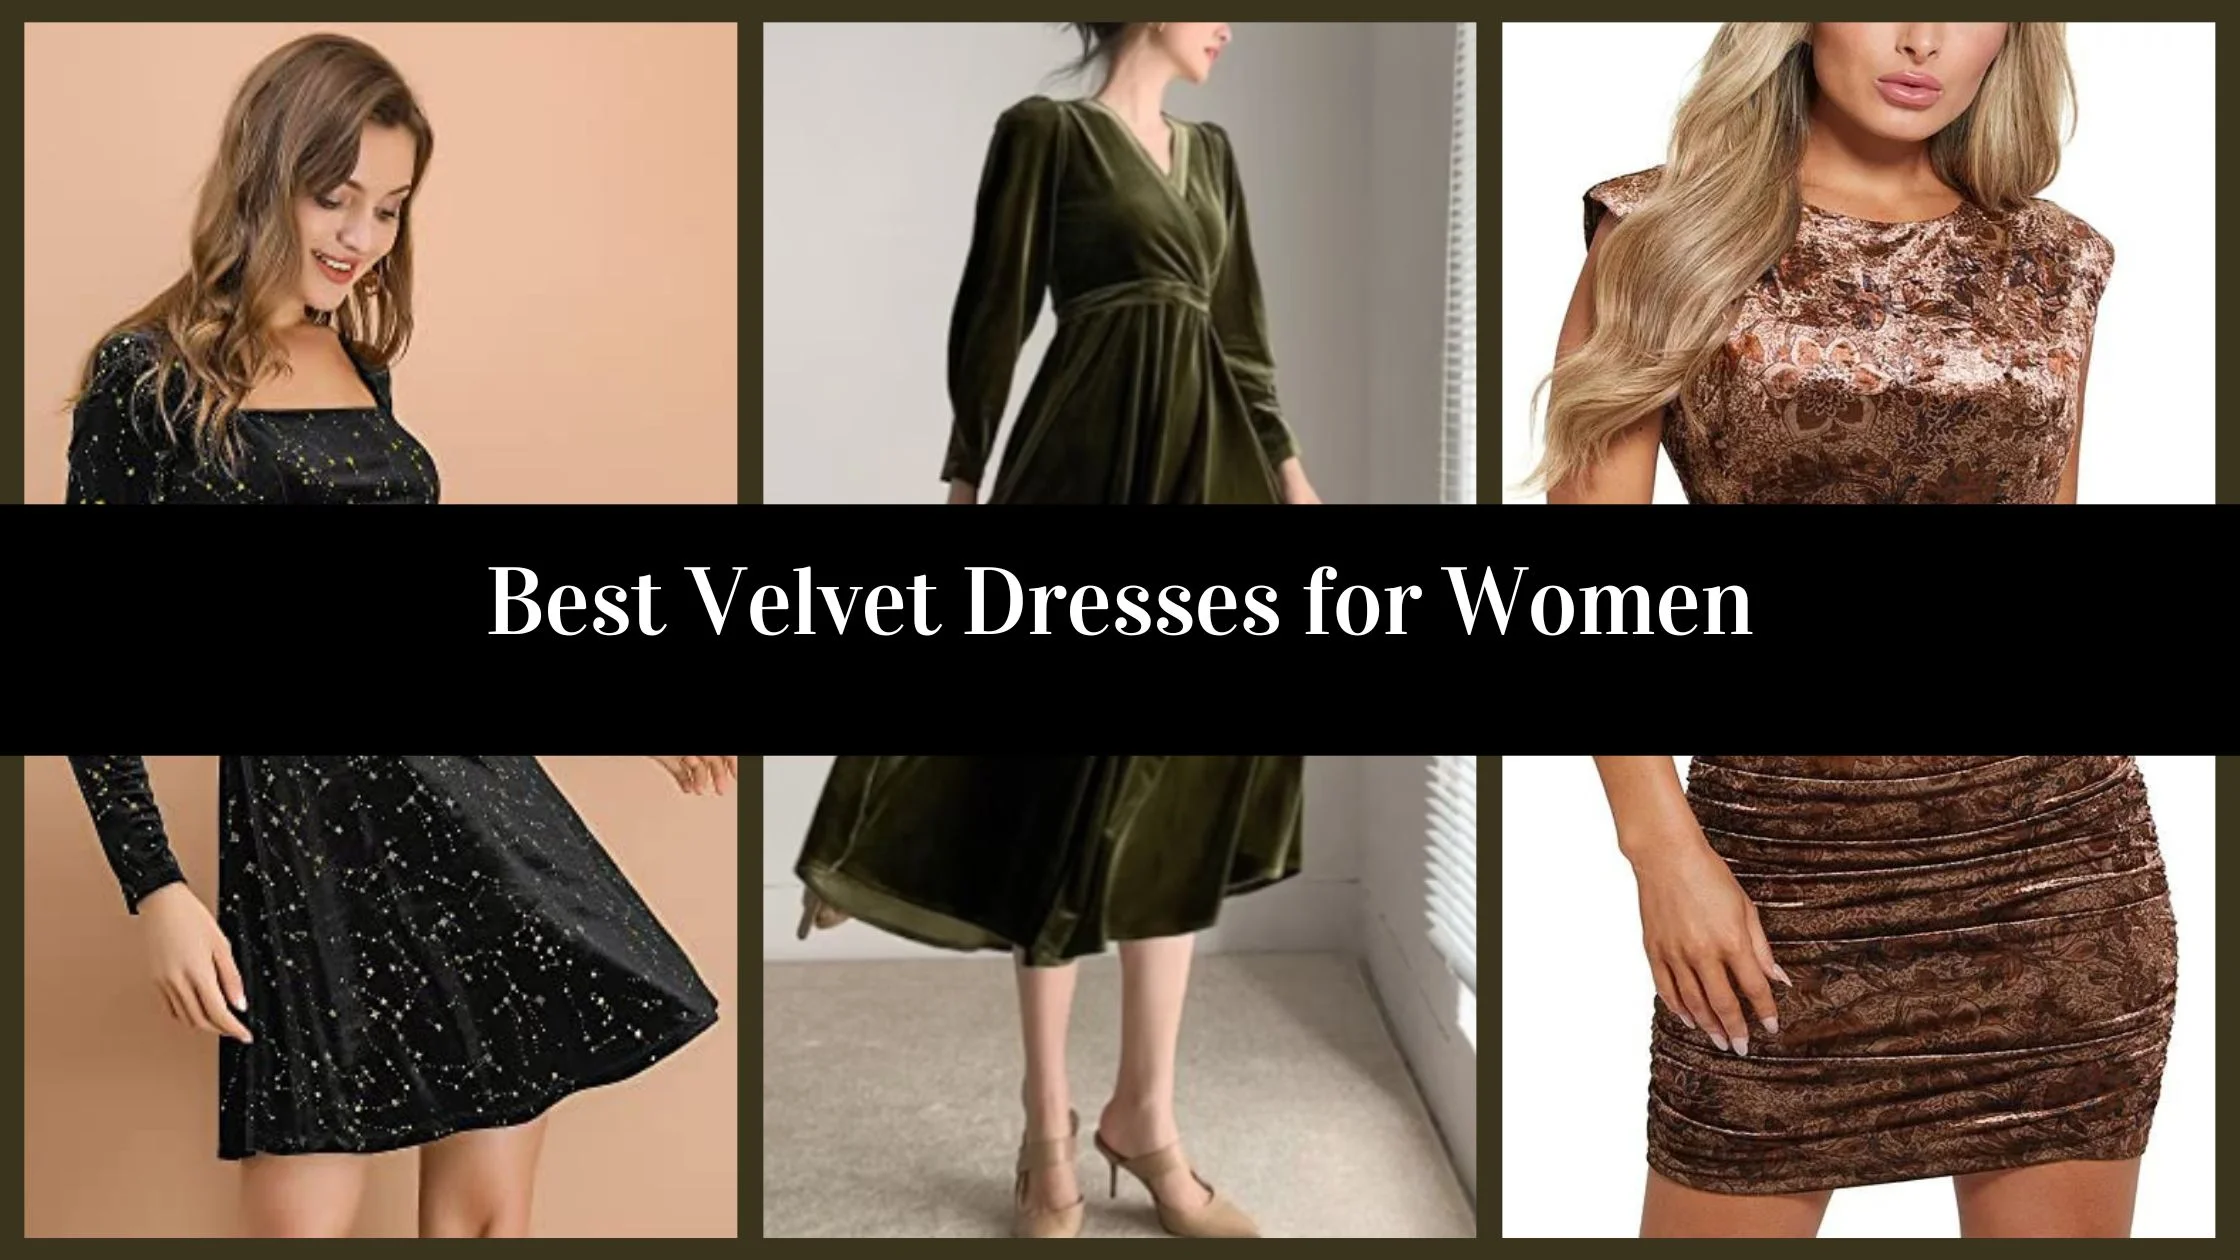 Best Velvet Dresses for women - My Blog